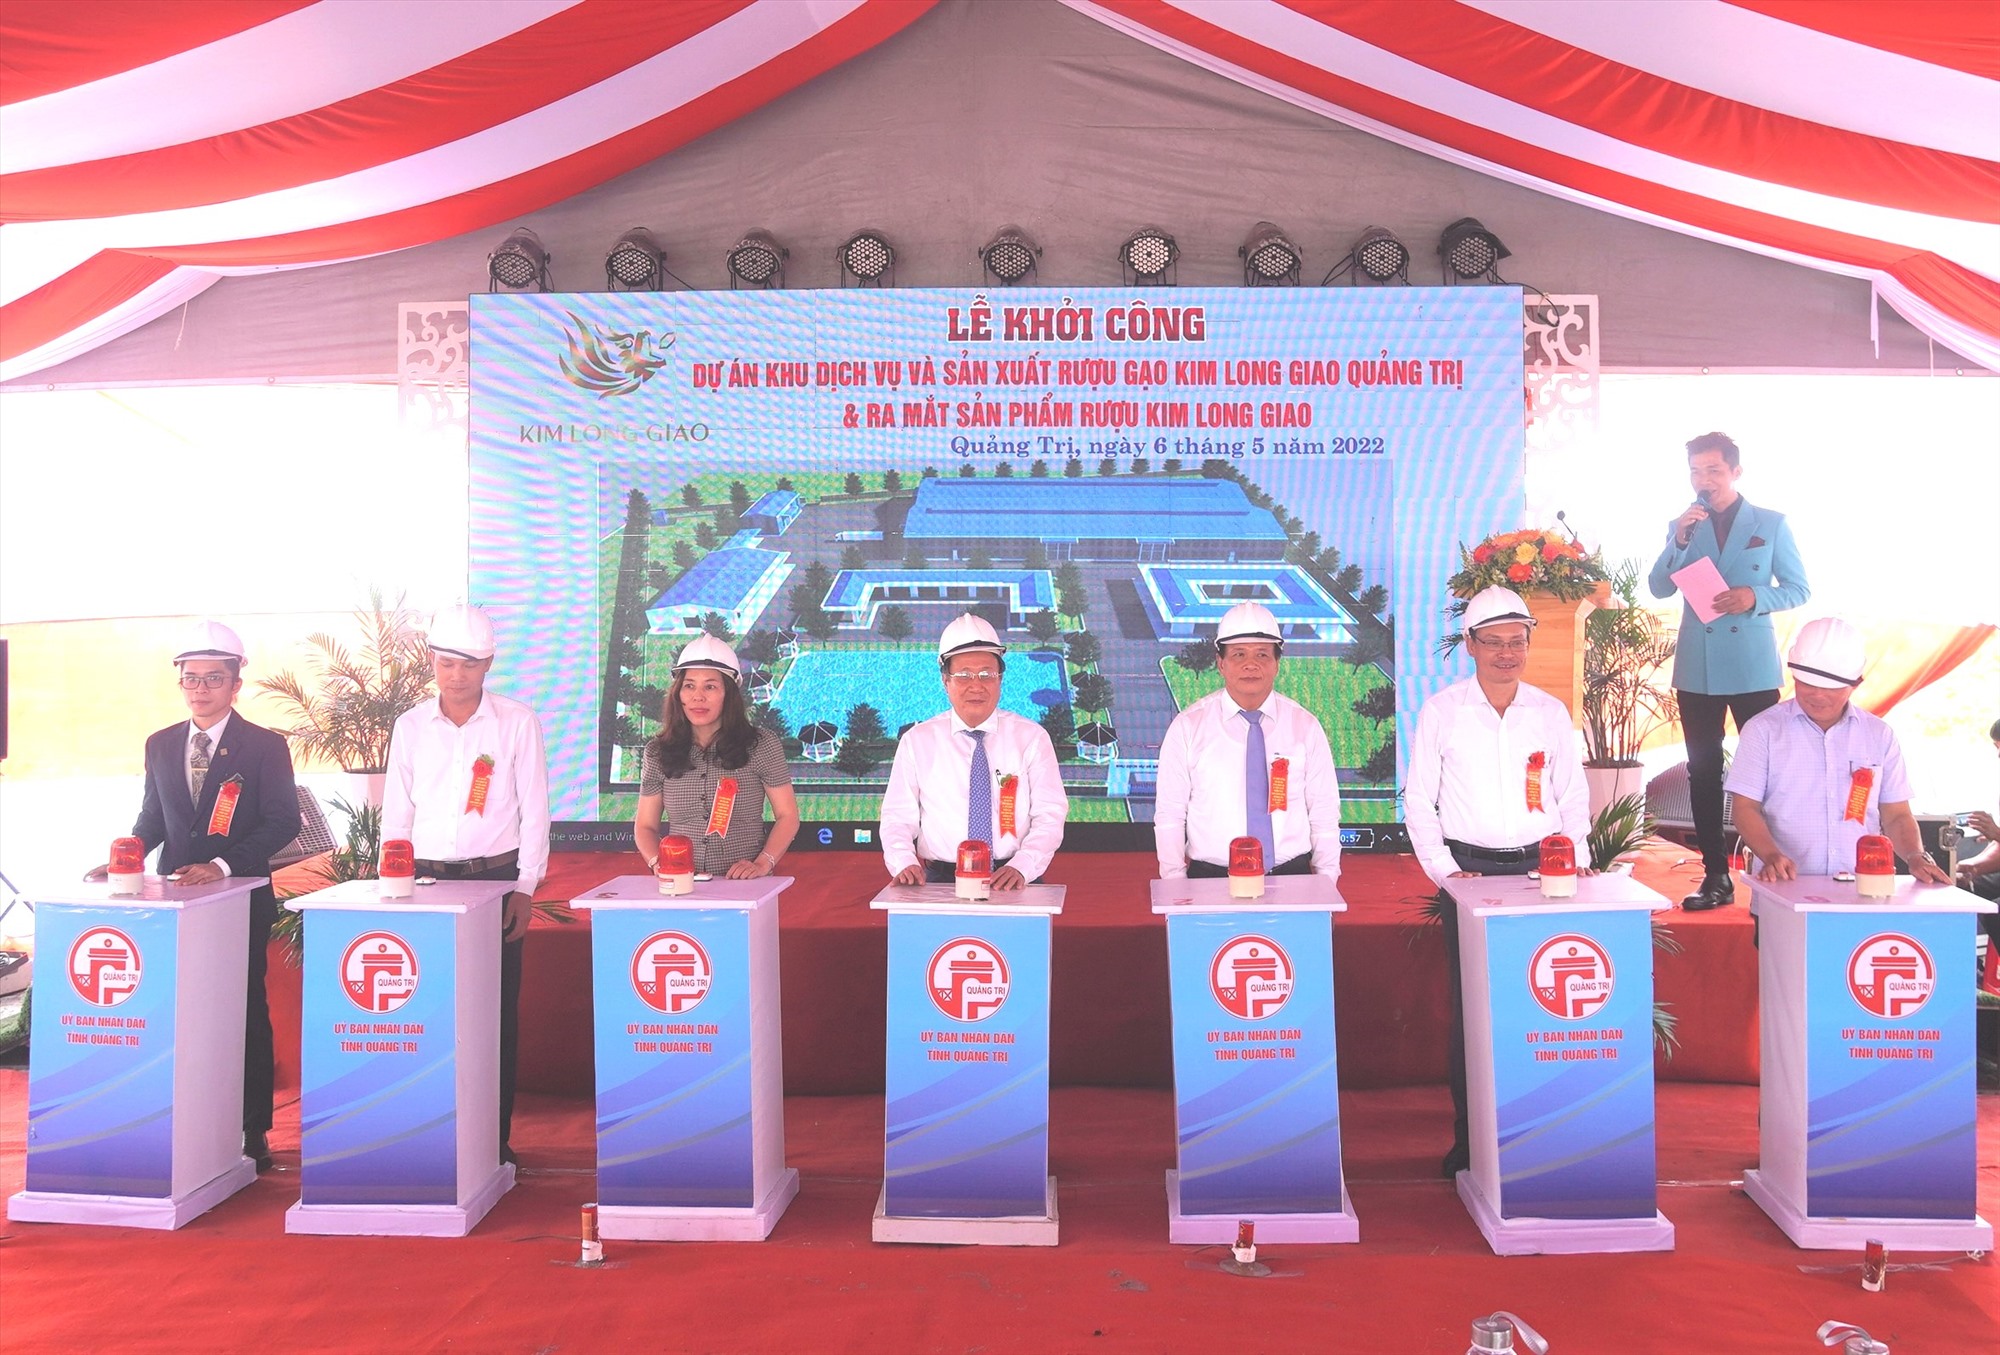 Các đại biểu ấn nút khởi công dự án Khu dịch vụ và sản xuất rượu gạo Kim Long Giao Quảng Trị - Ảnh: Tiến Nhất